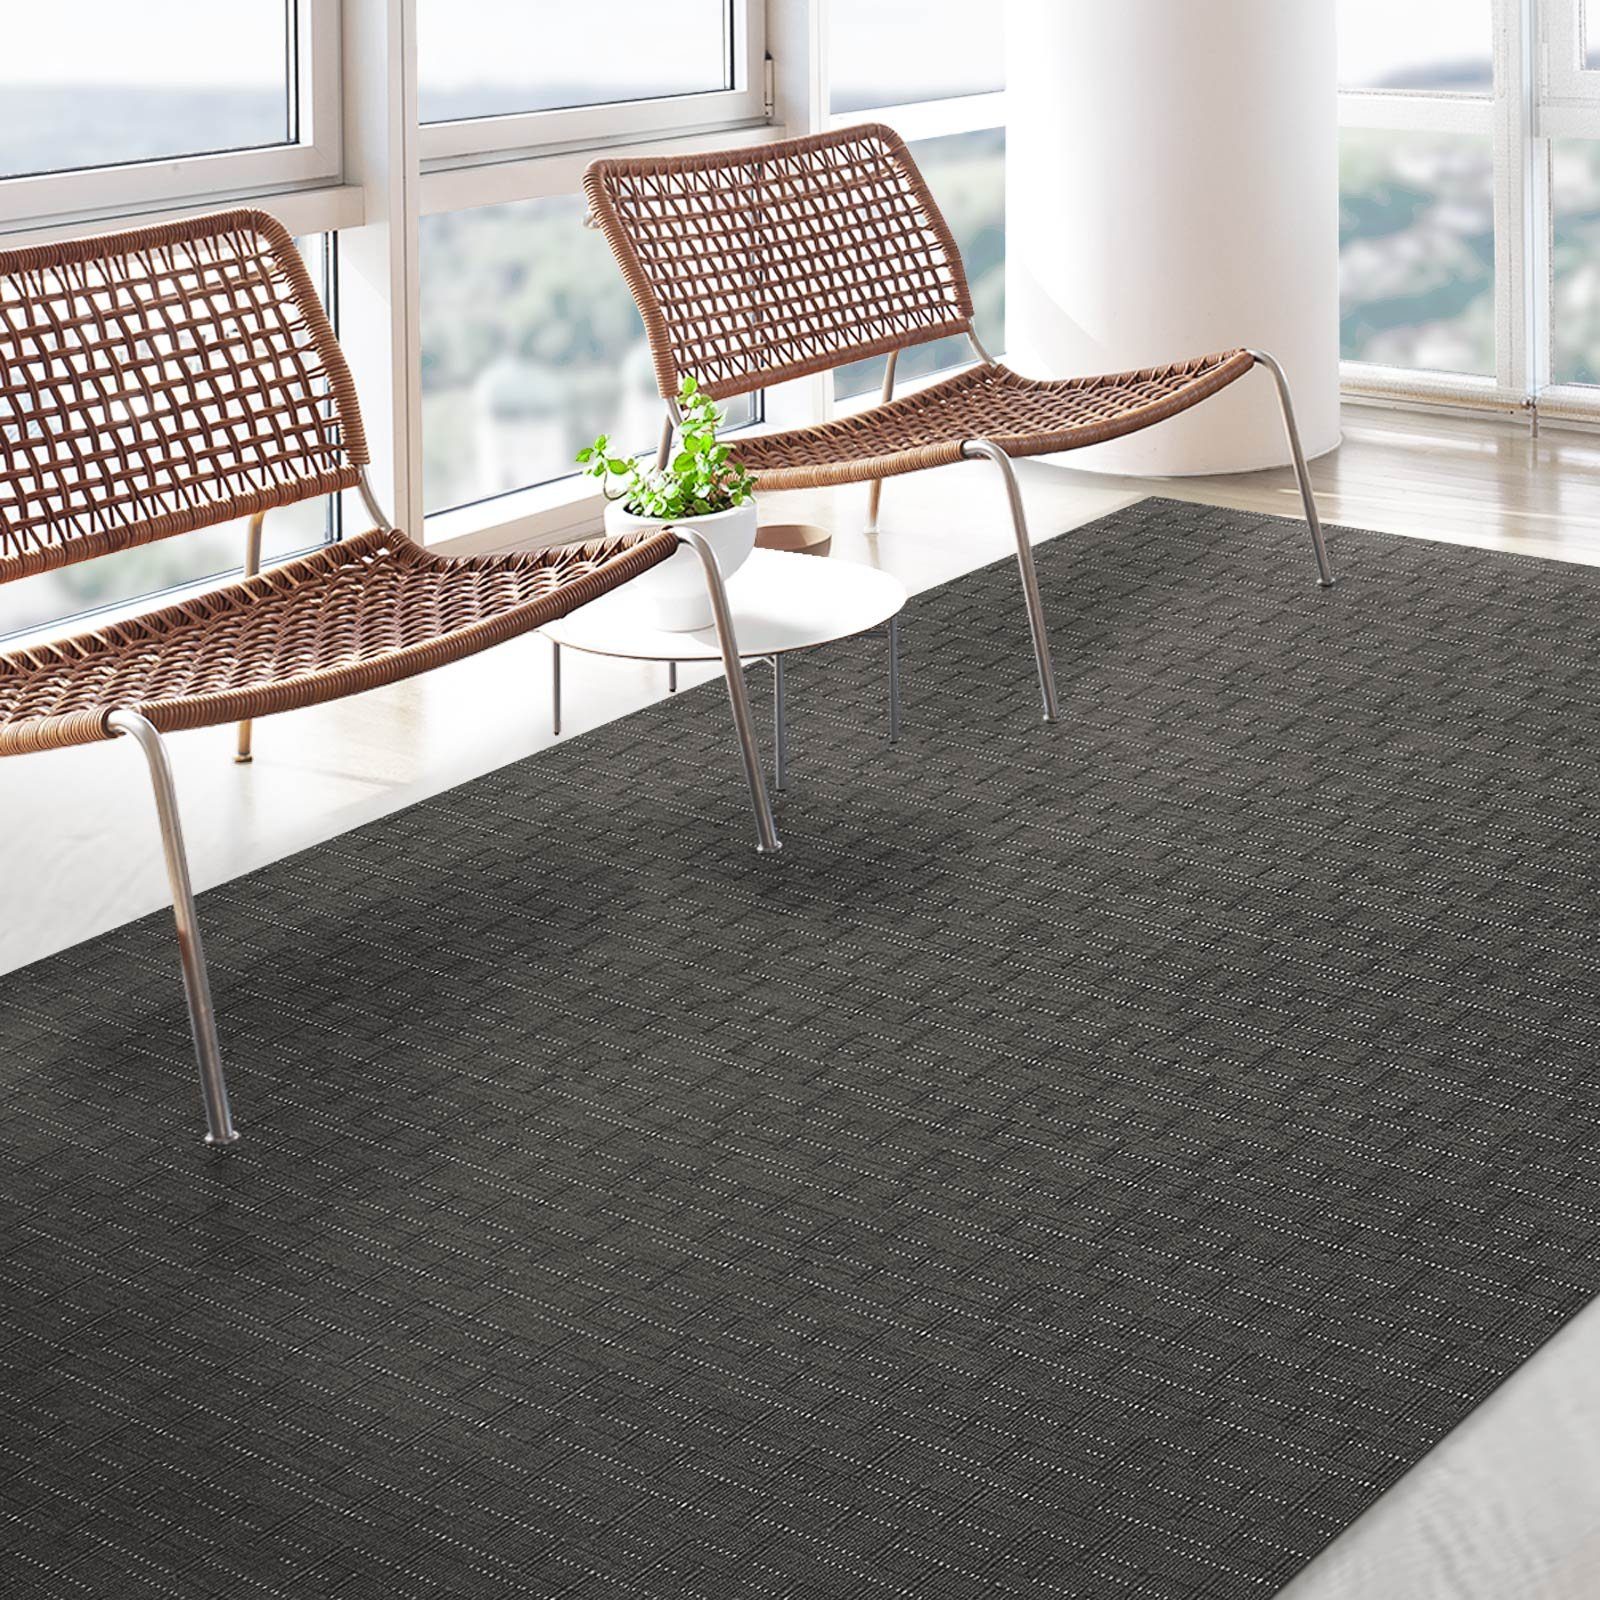 Vinylteppich Tropea, verschiedene Größen, vielseitig & Teppichläufer, Karat, rechteckig, einsetzbar, Outdoorbereiche für Indoor